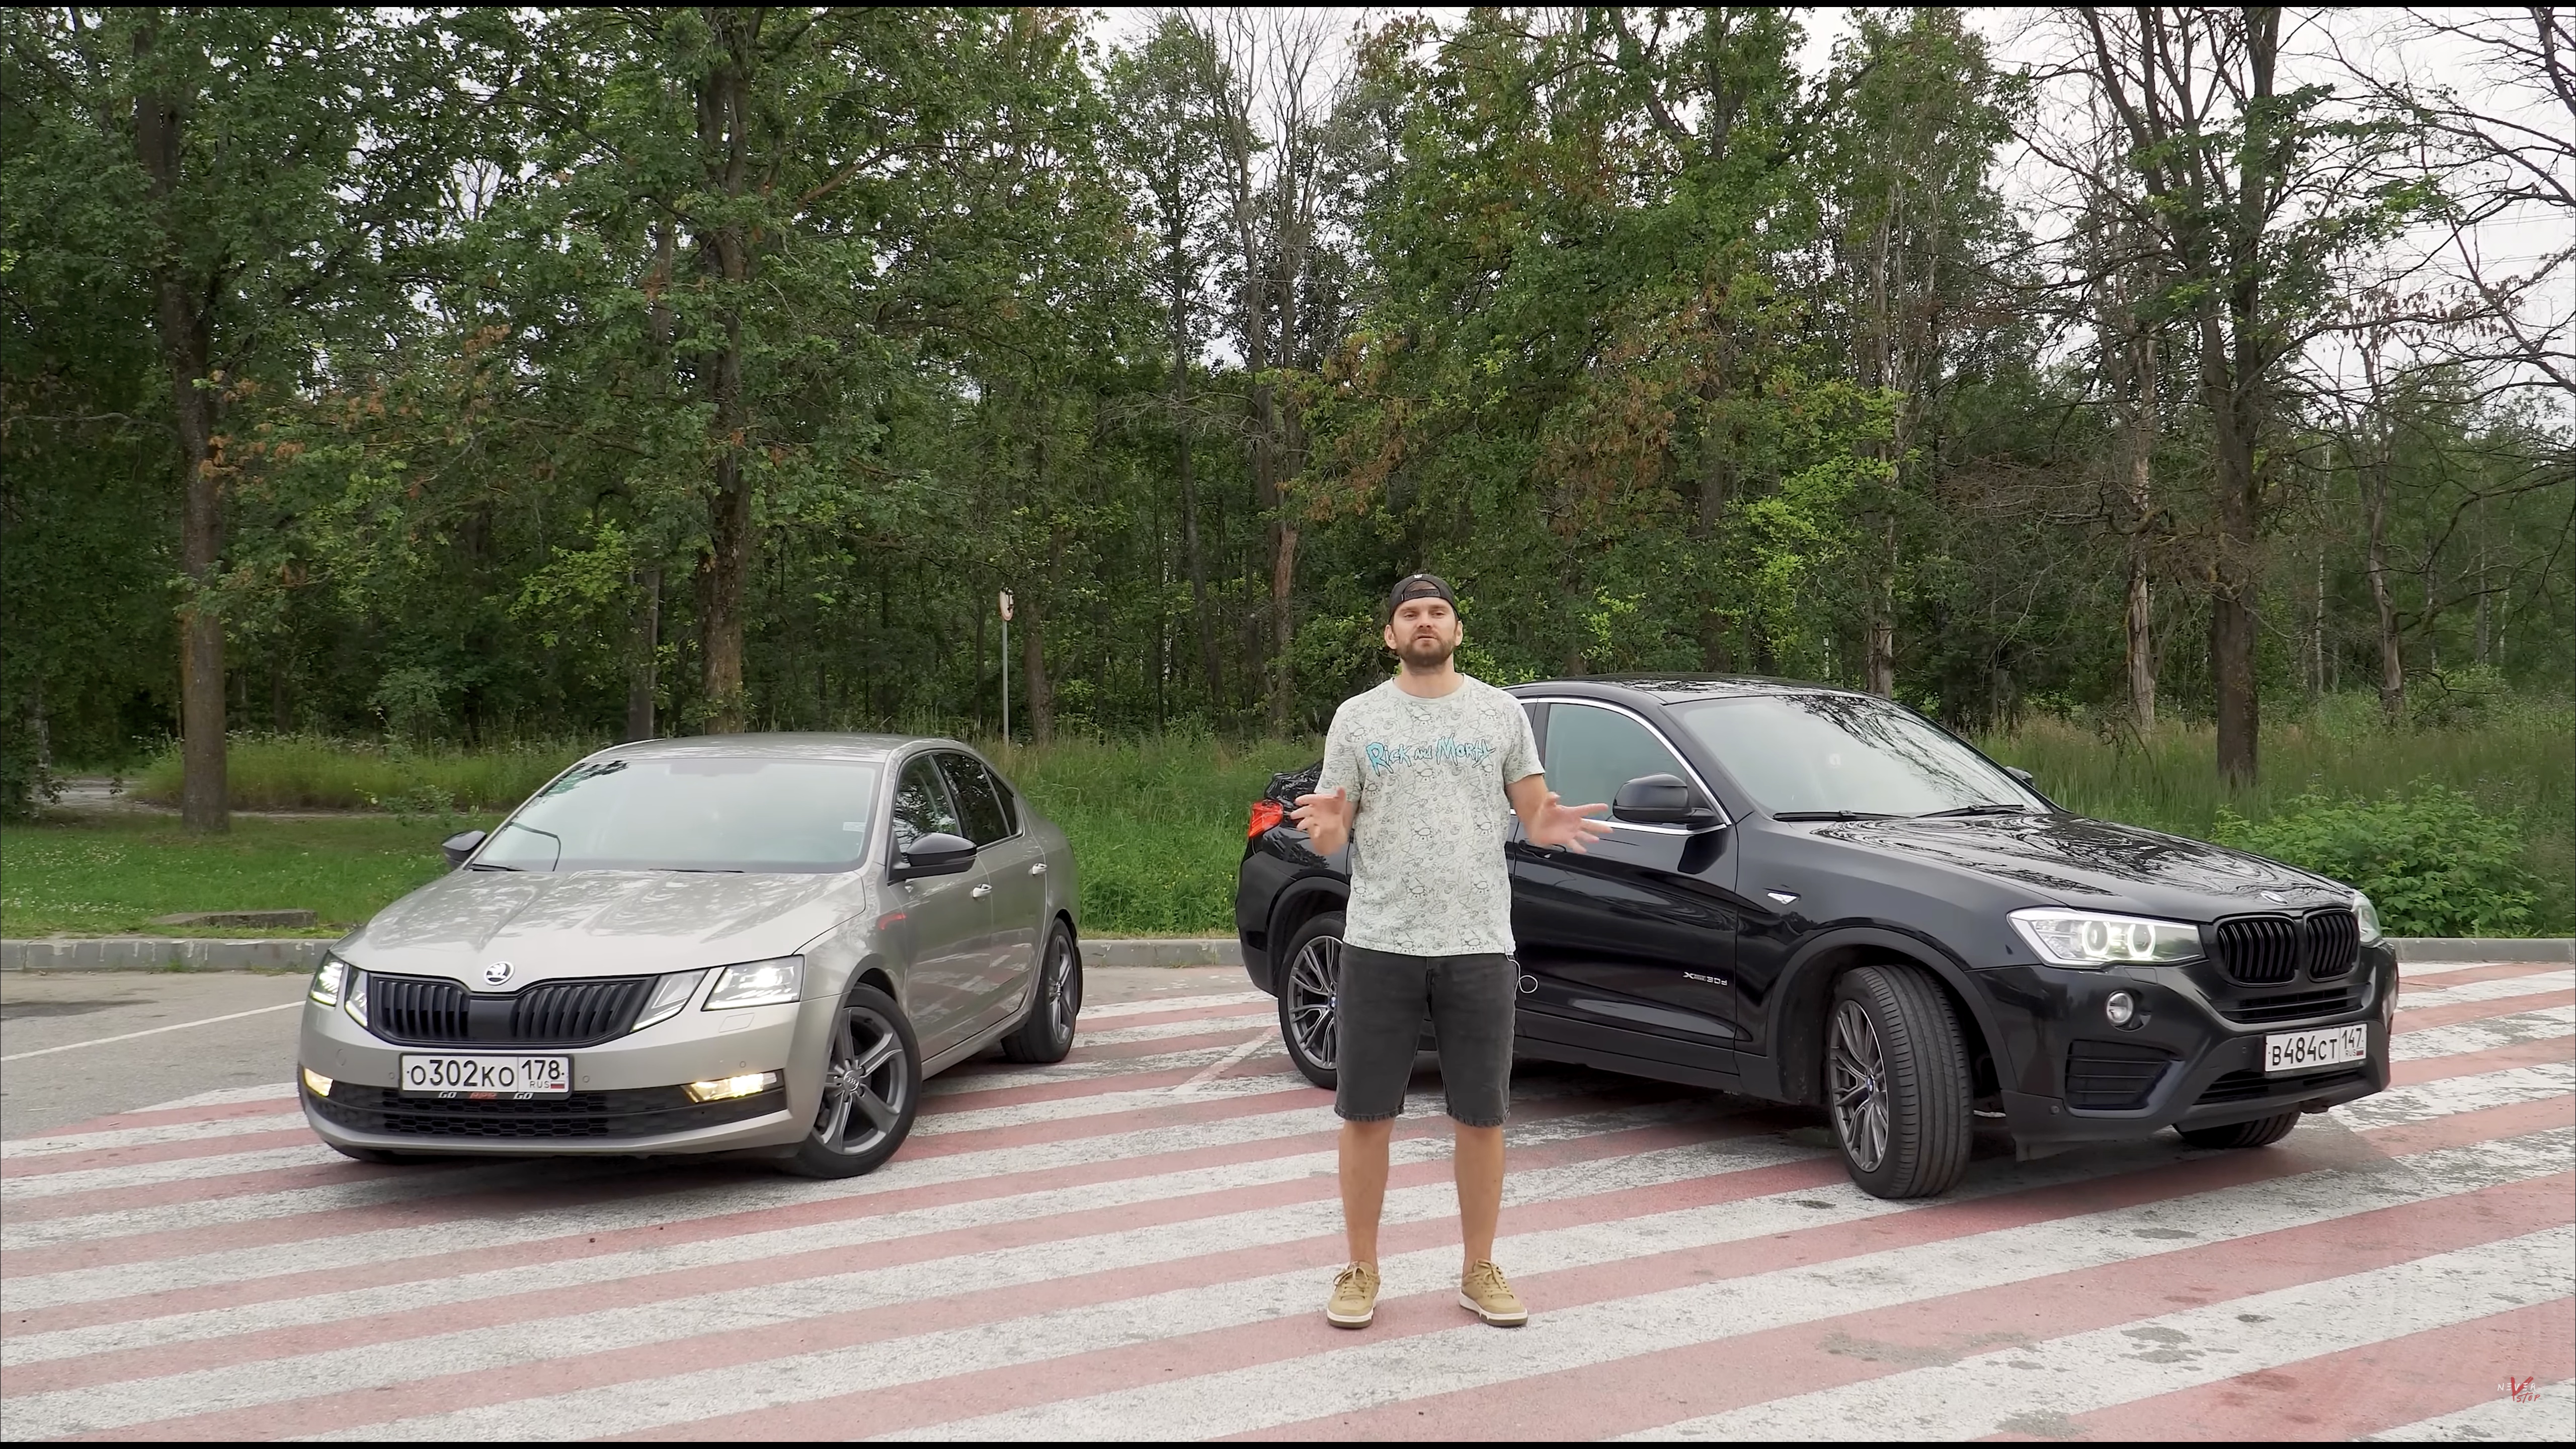 Анонс видео-теста BMW x4 3.0d 330hp VS Skoda Octavia APR 260+ МКПП